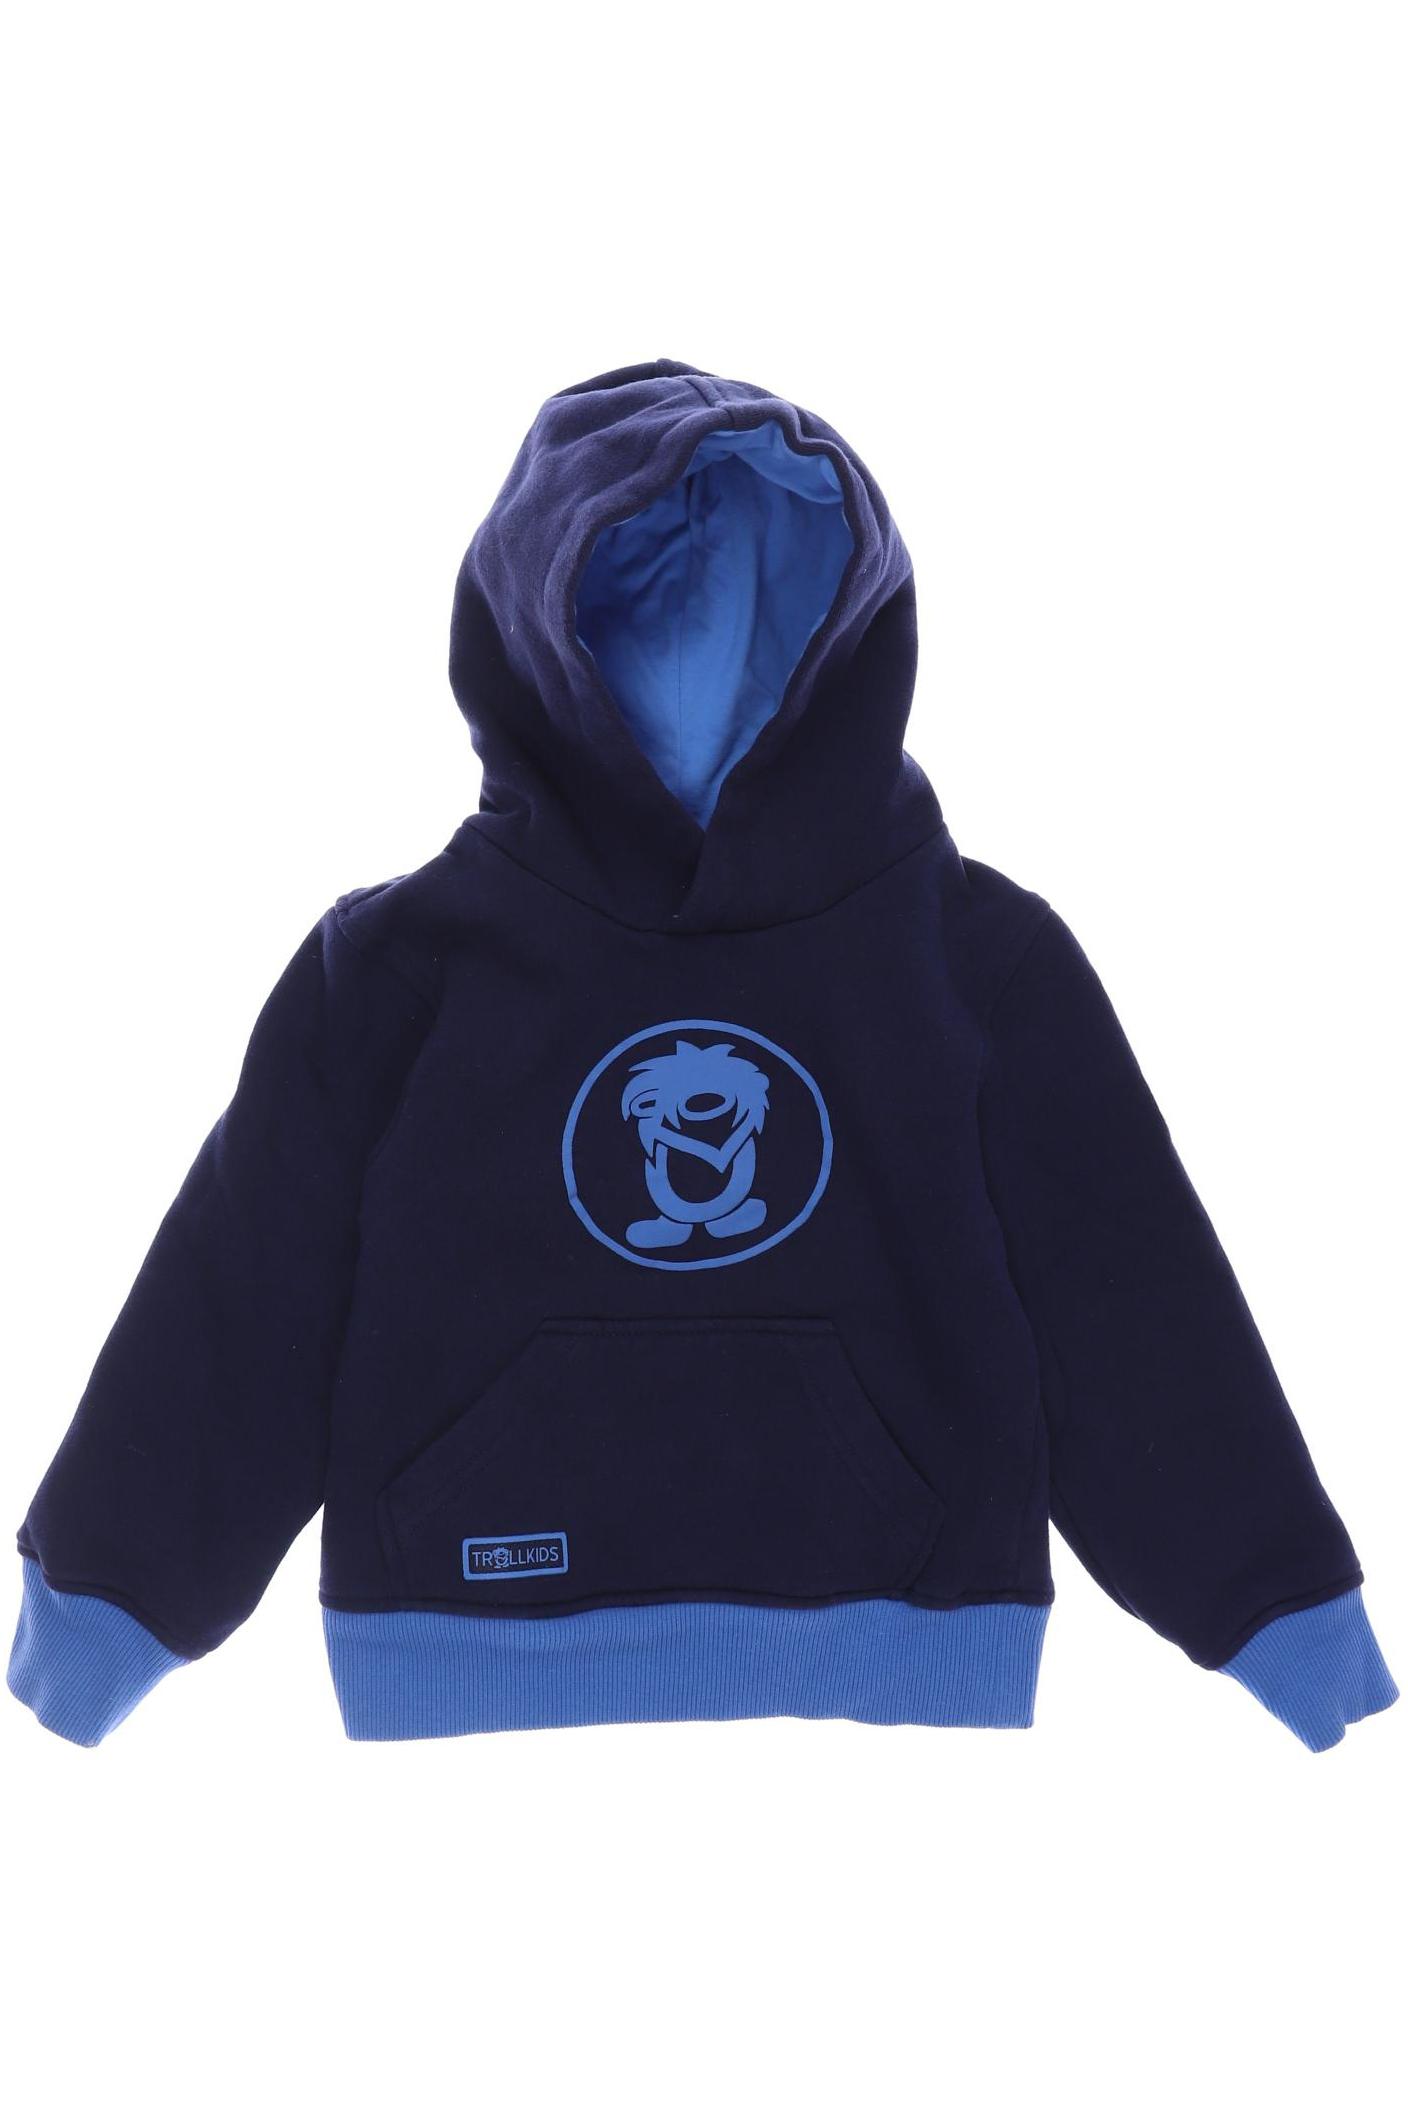 Trollkids Jungen Hoodies & Sweater, marineblau von Trollkids